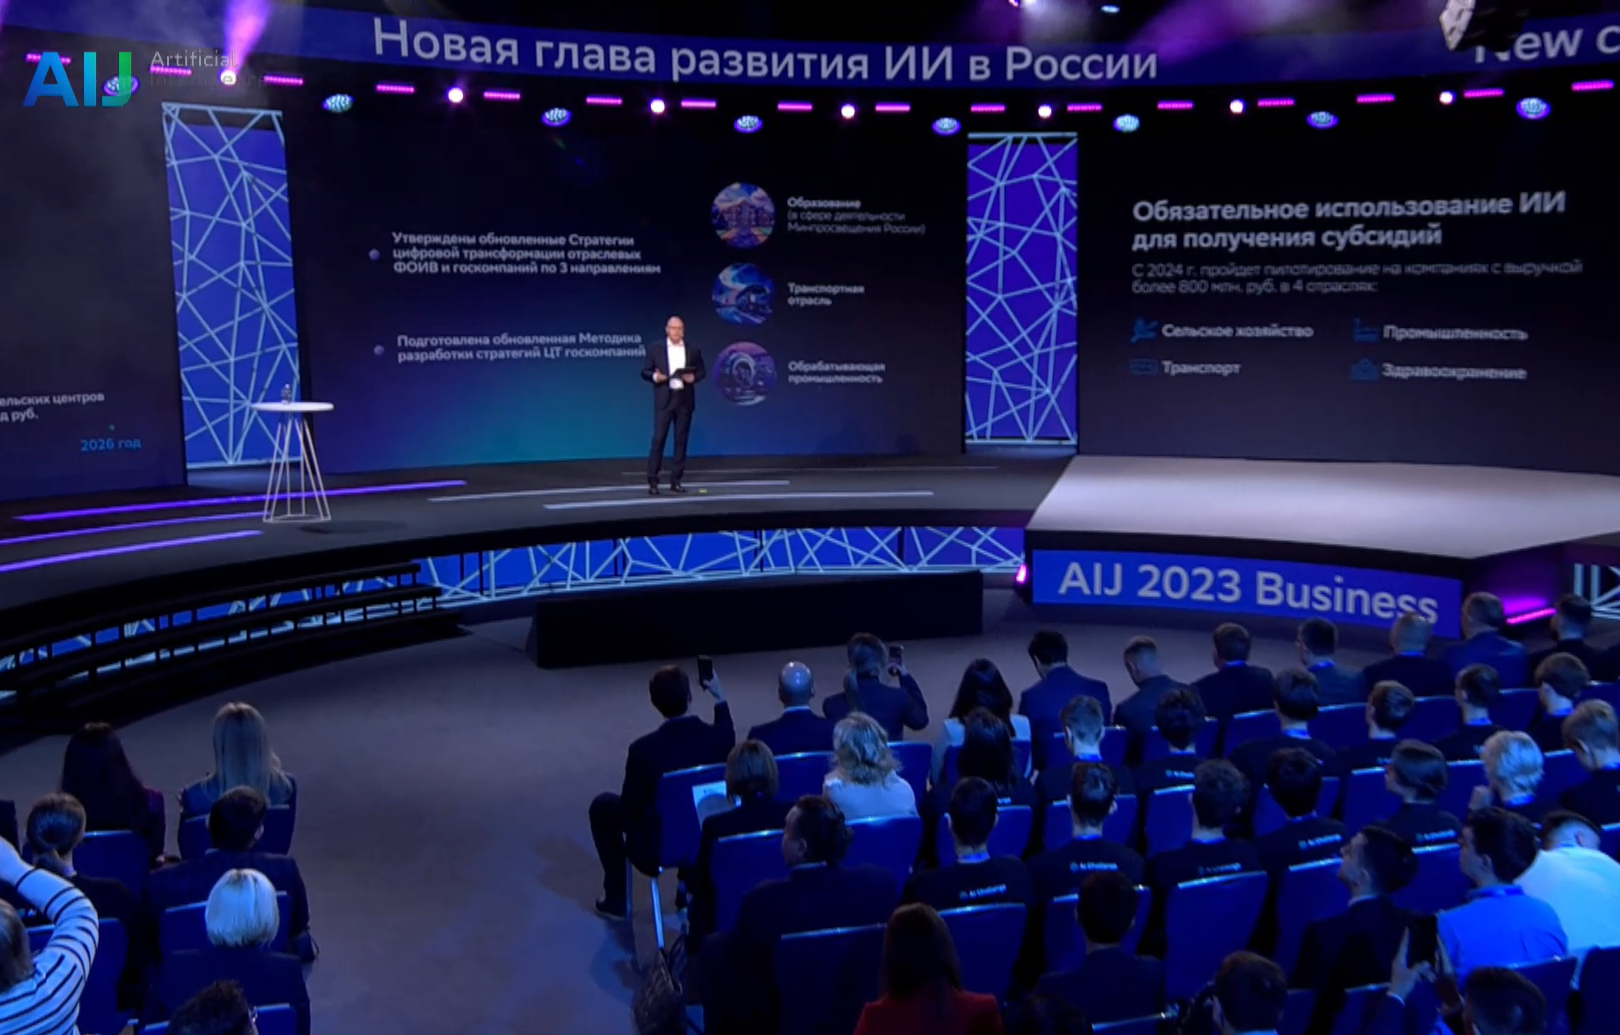 AI Journey 2023: о развитии ИИ в России и новых возможностях